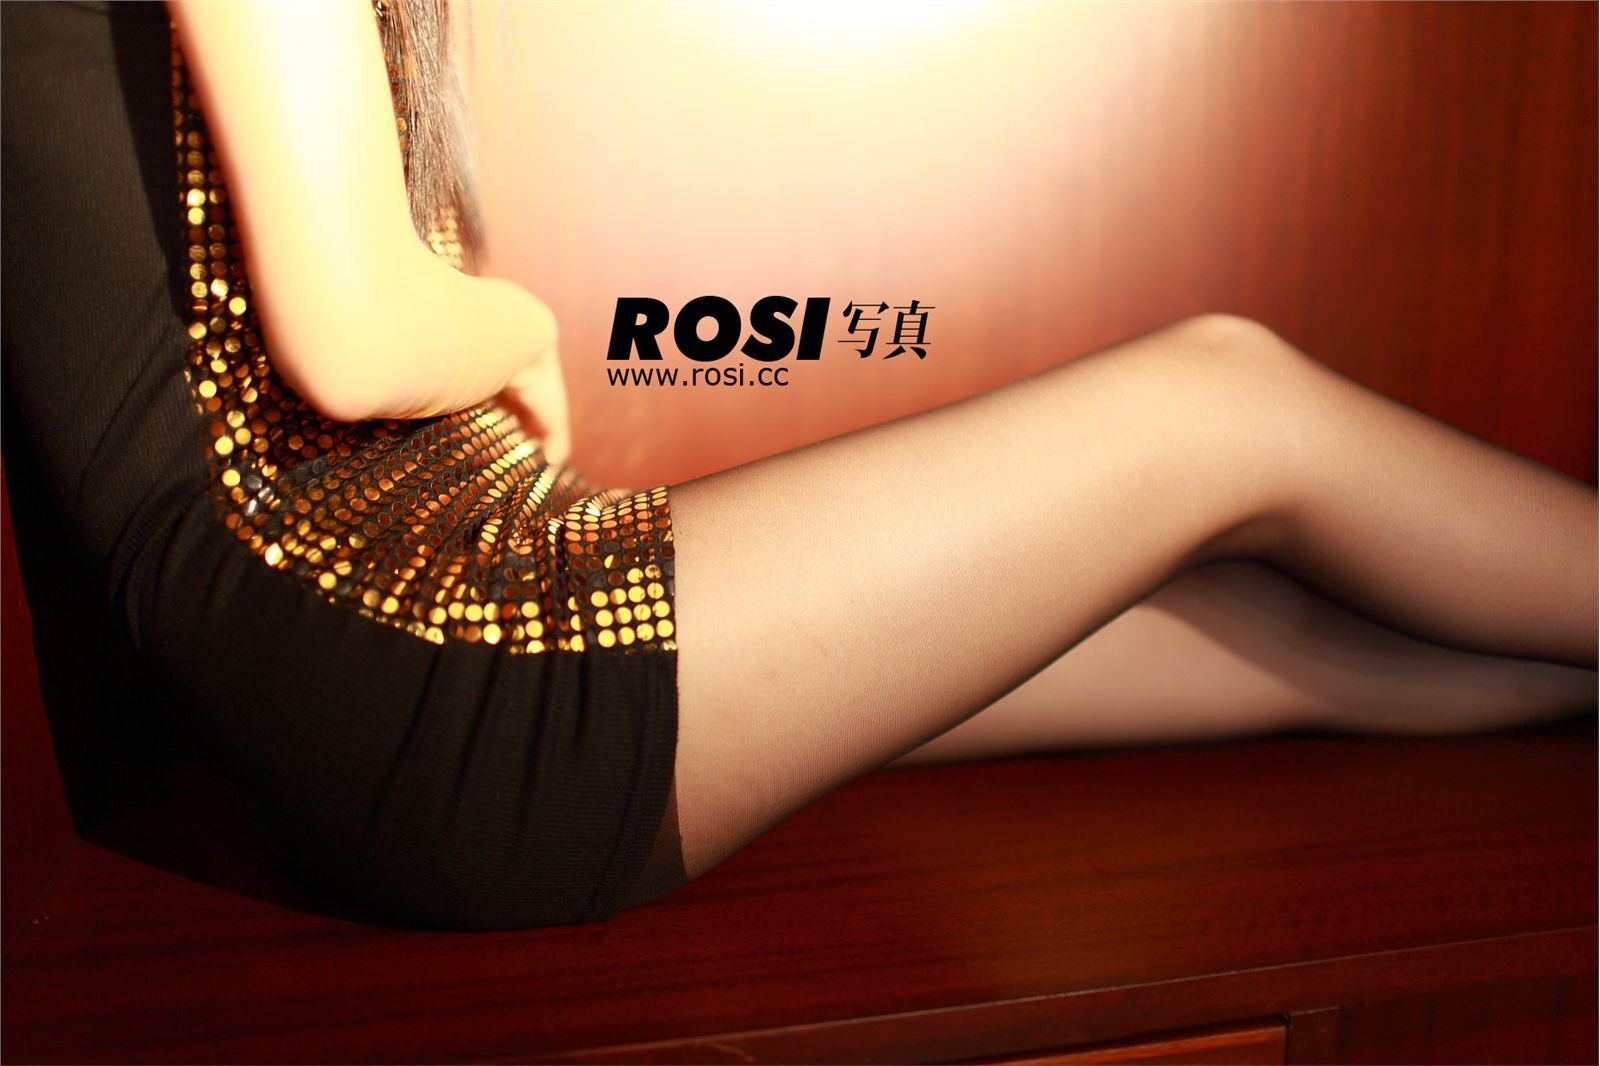 NO.047- ROSI.CC Beauty photo, hazy silk stockings temptation